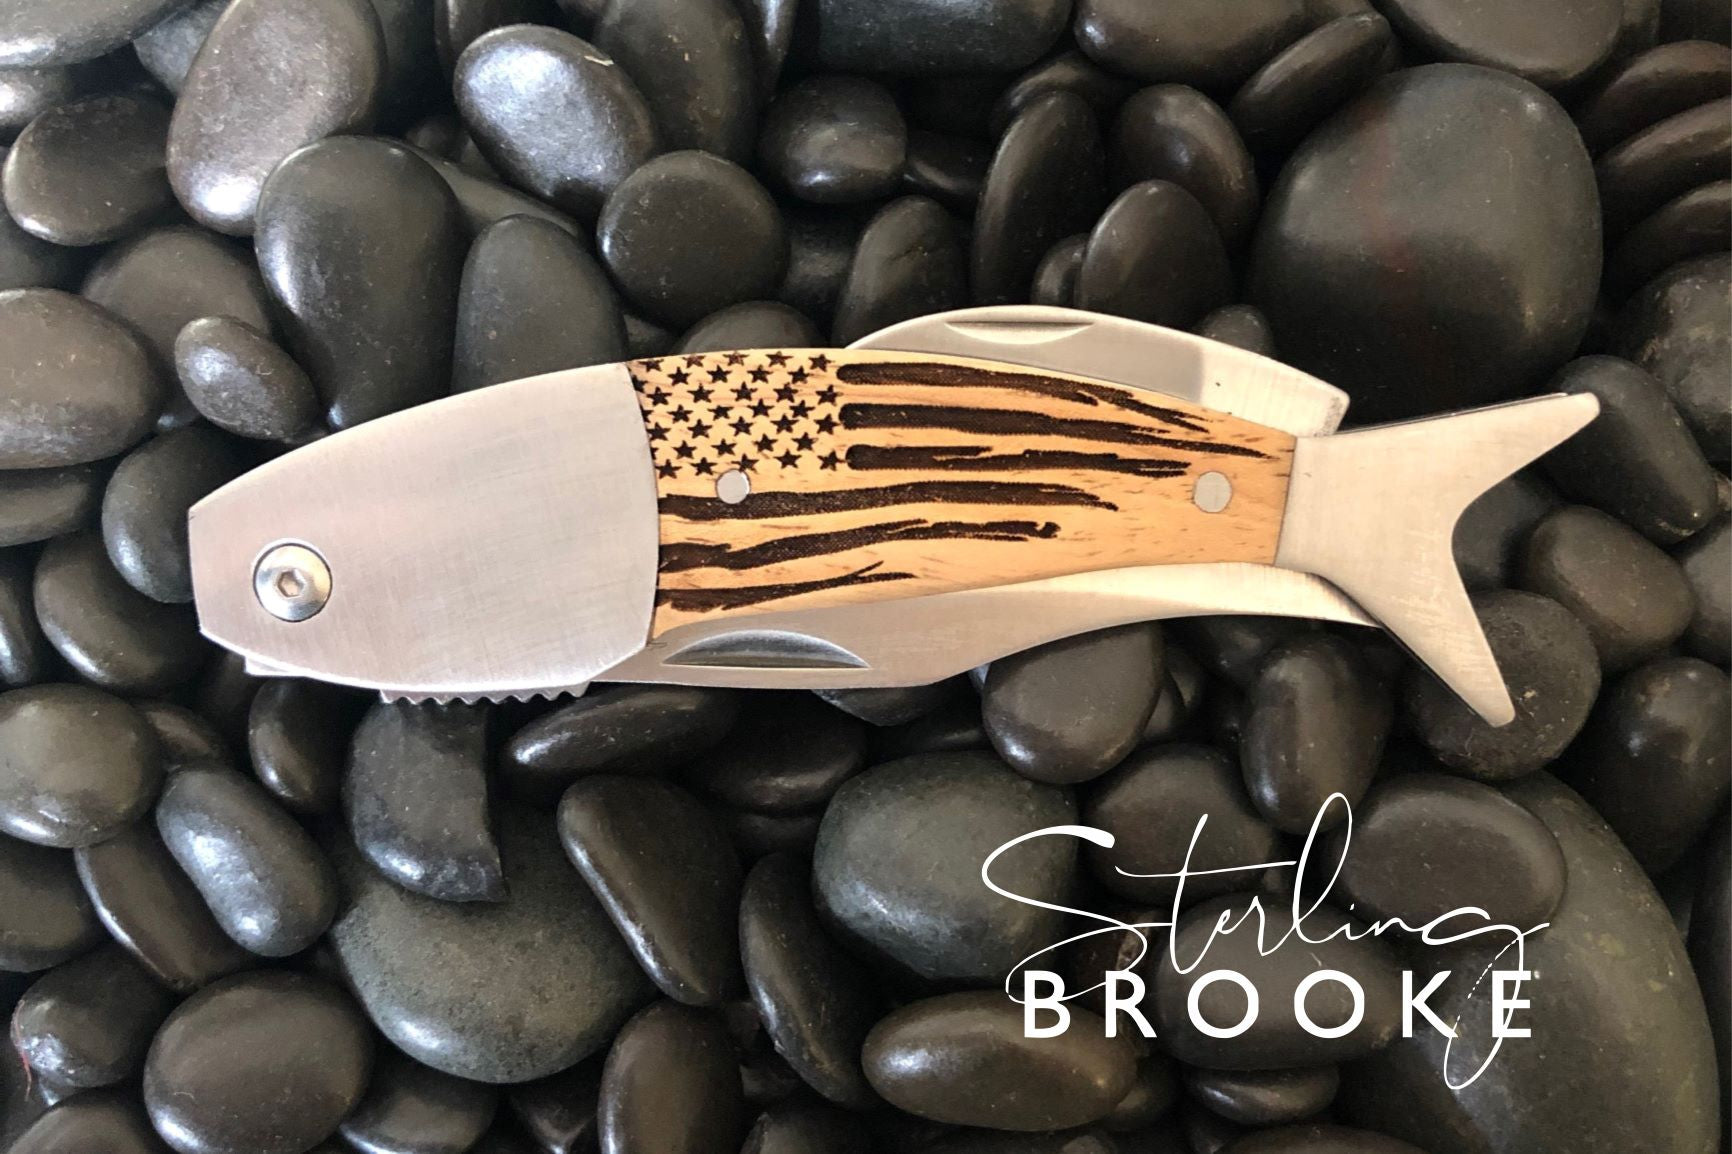 Coastal Large Pocket Knife  The American – Sterling Brooke